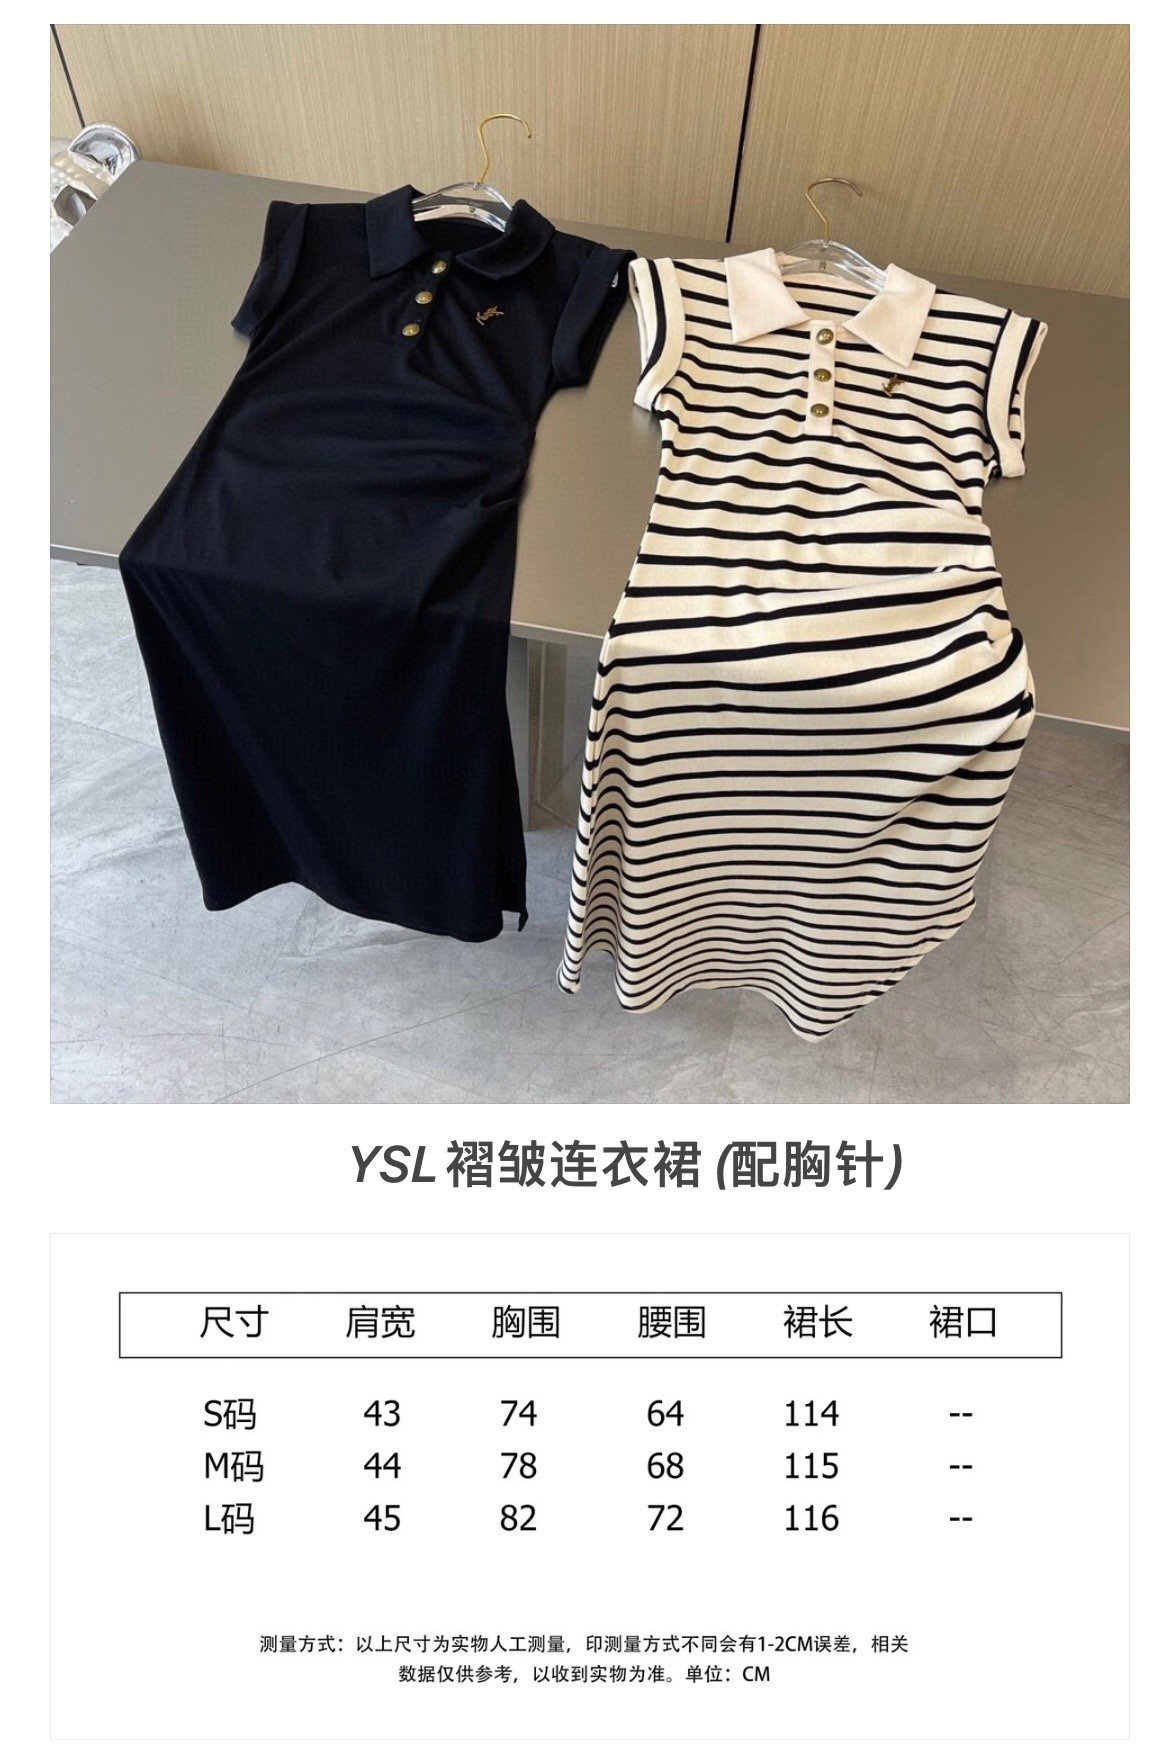 Ysl条纹裙不规则设计显高显瘦pol